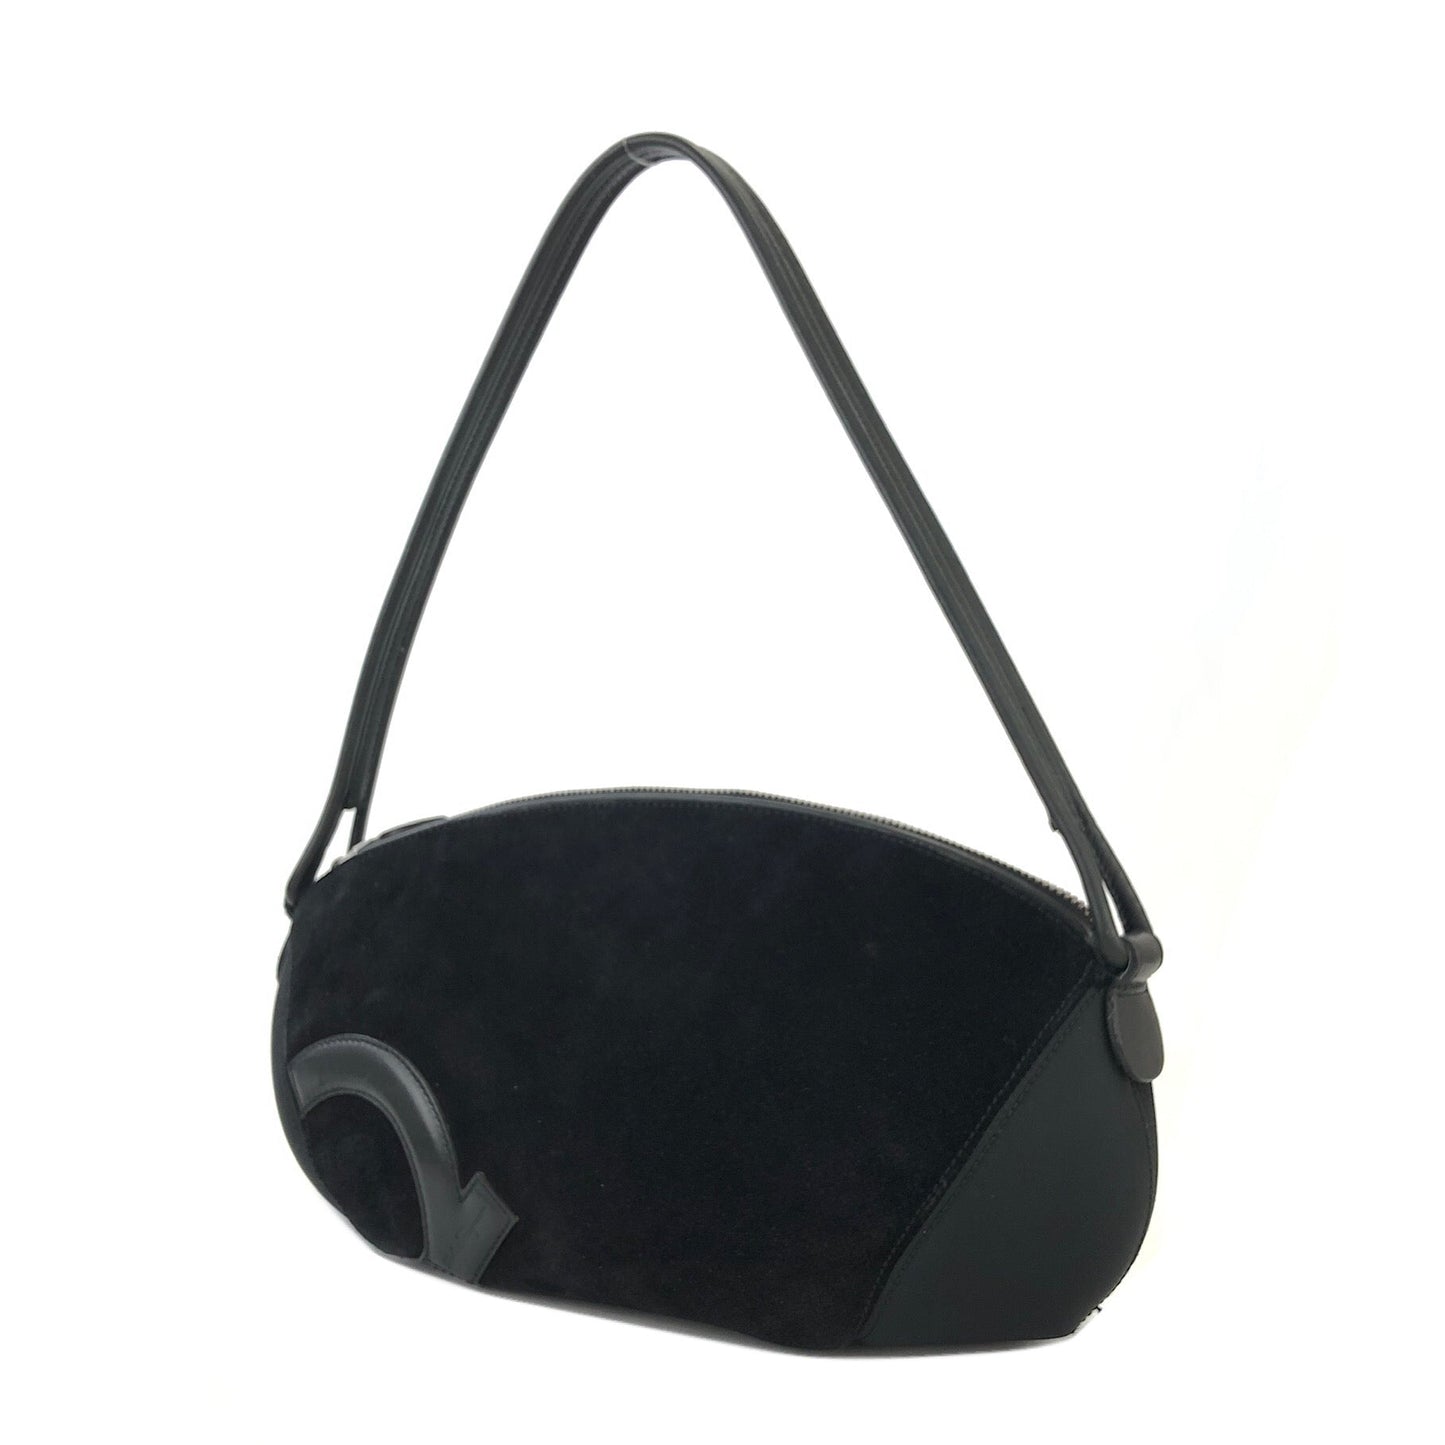 Salvatore Ferragamo Gancini Suede Shoulderbag Handbag Black Vintage Old 5psgn3